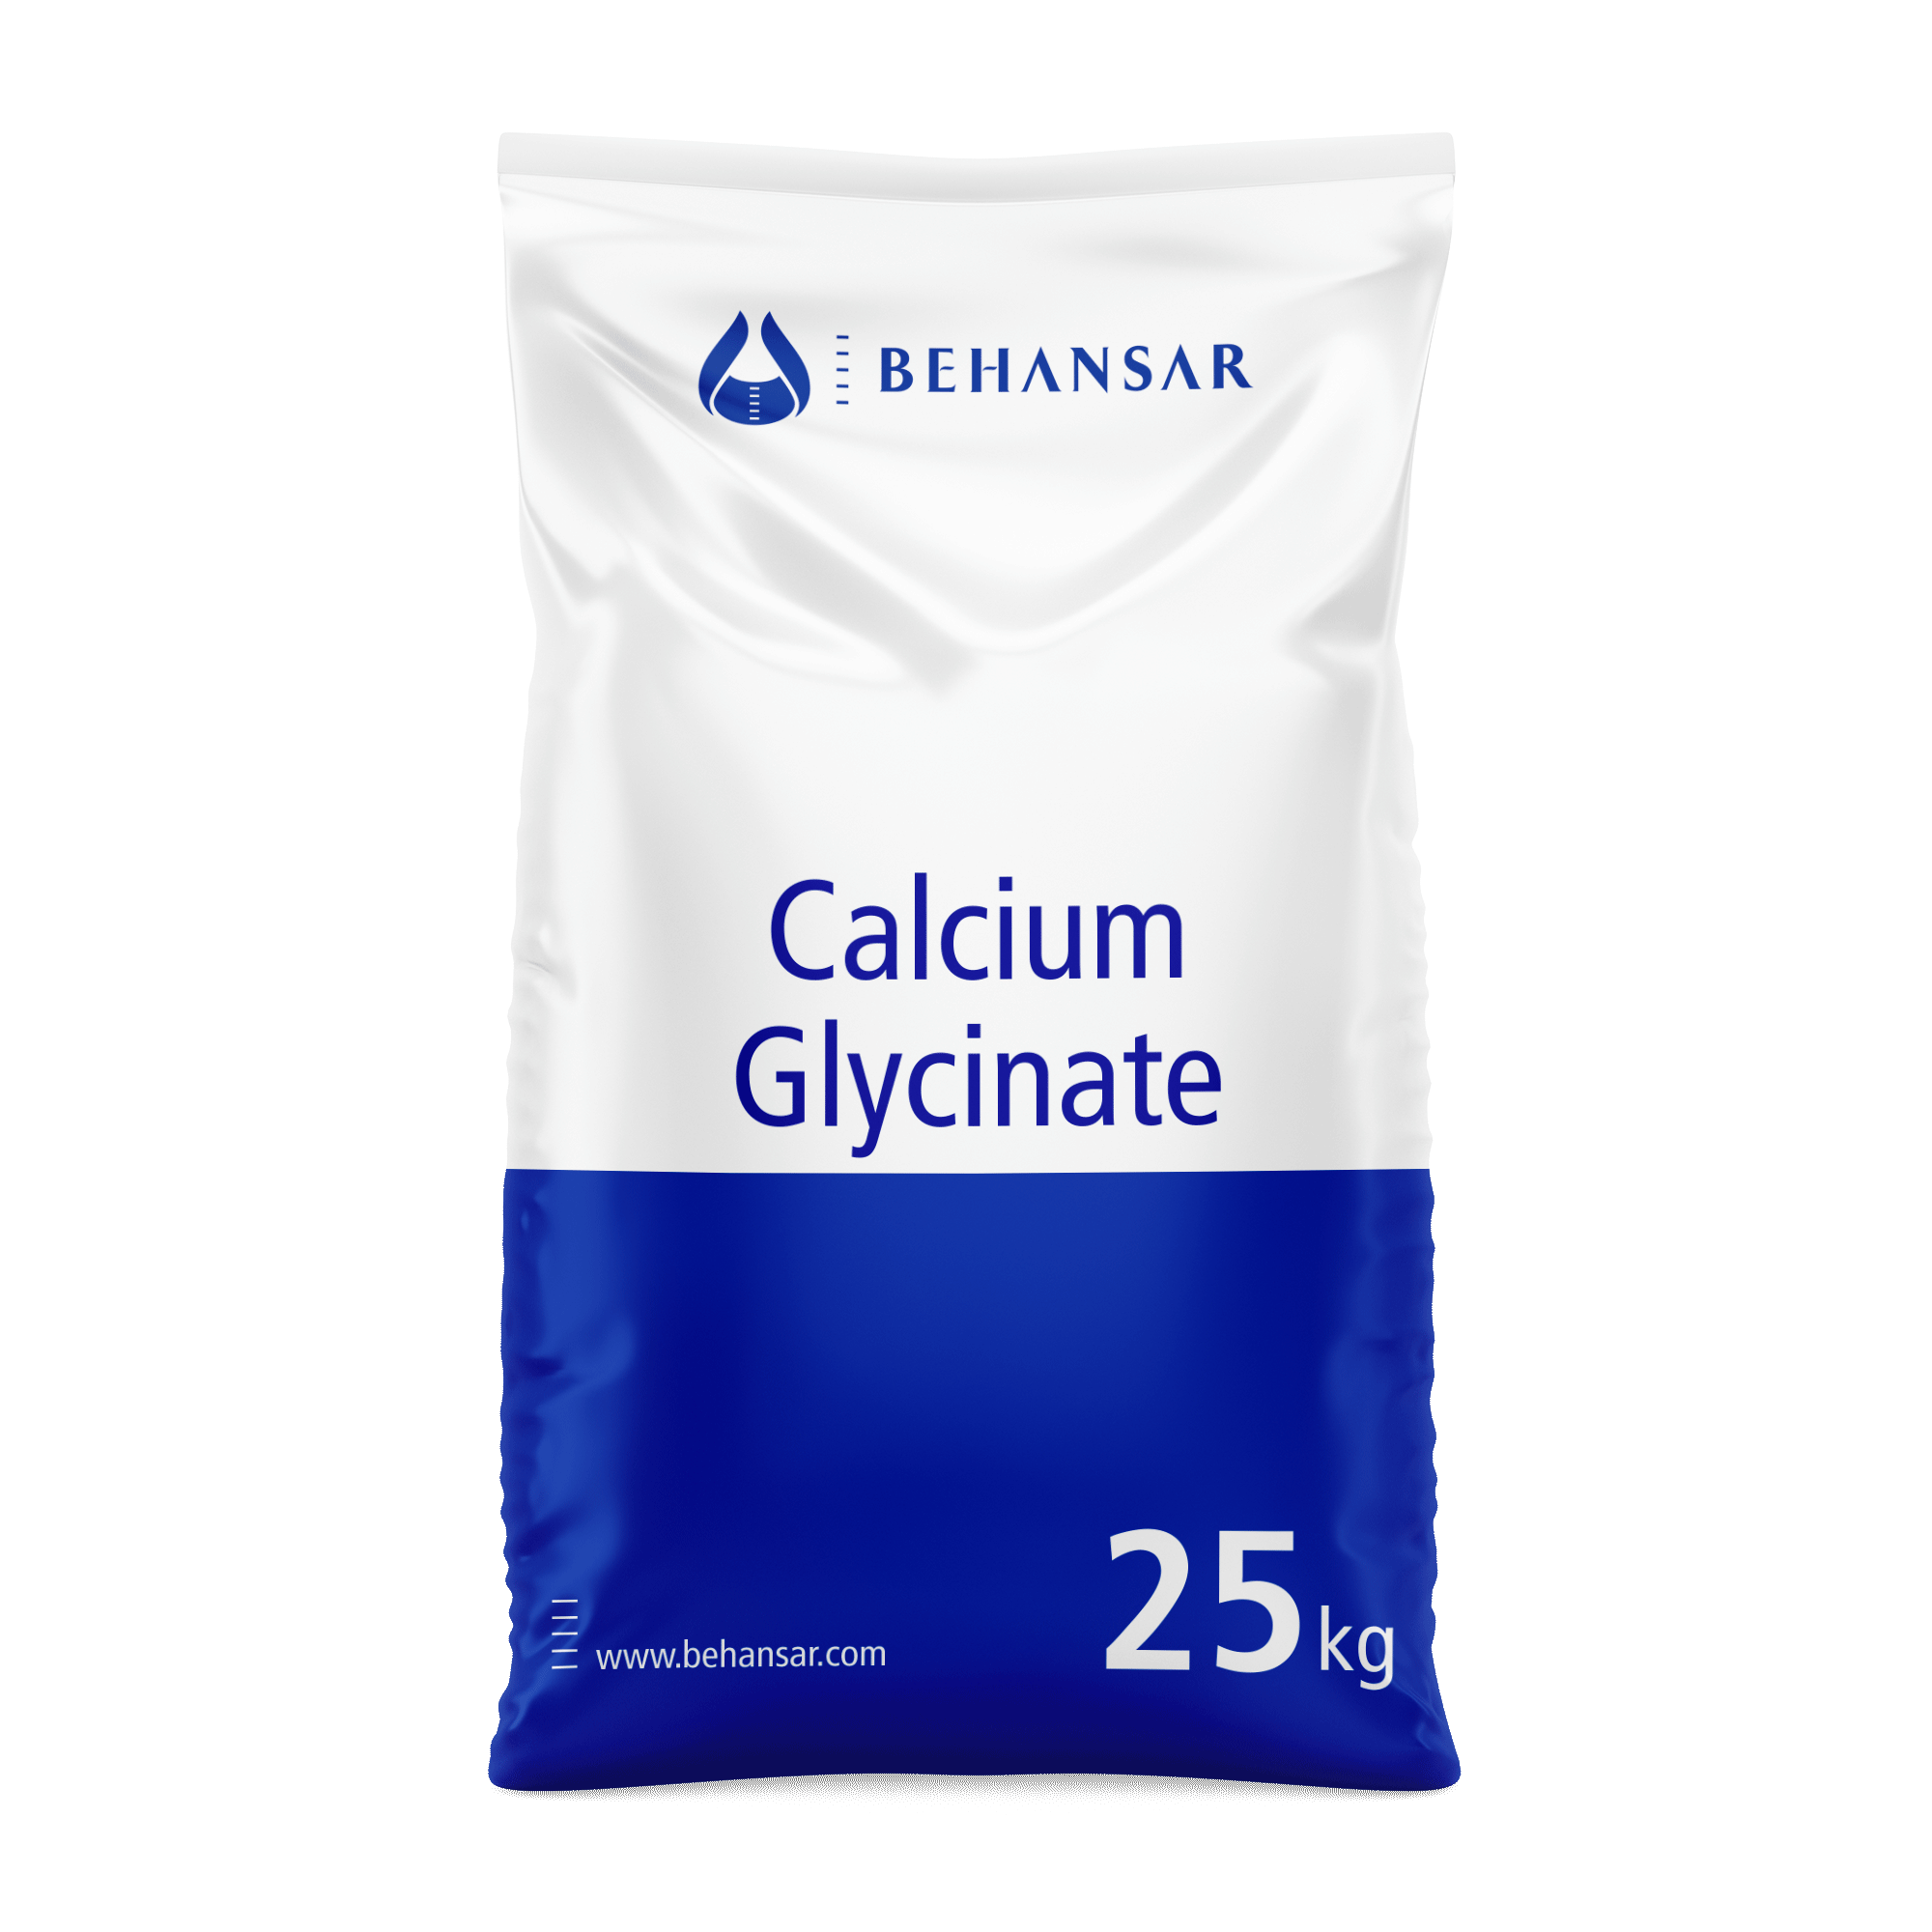 کلسیم گلایسینات یکی از تولیدات شرکت بهانسار است